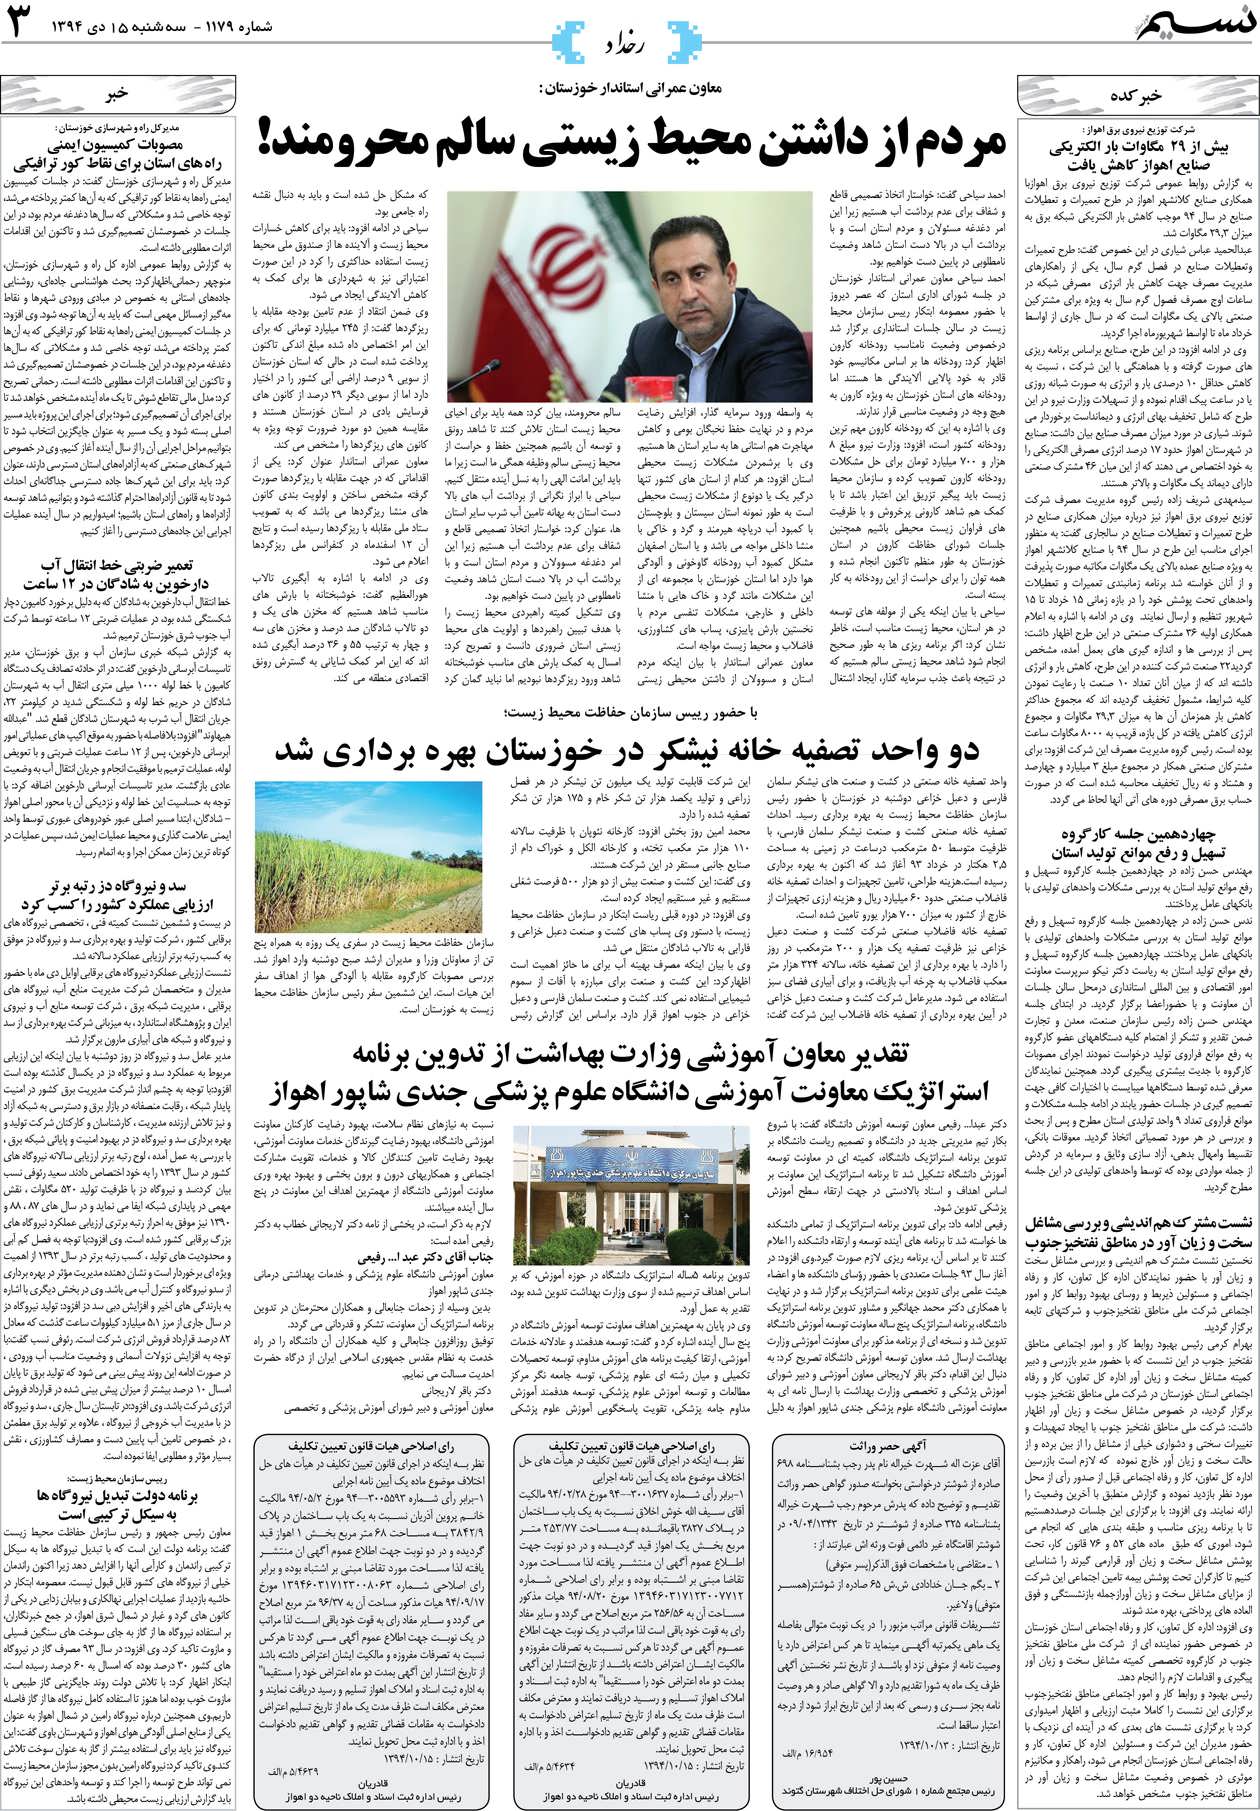 صفحه رخداد روزنامه نسیم شماره 1179